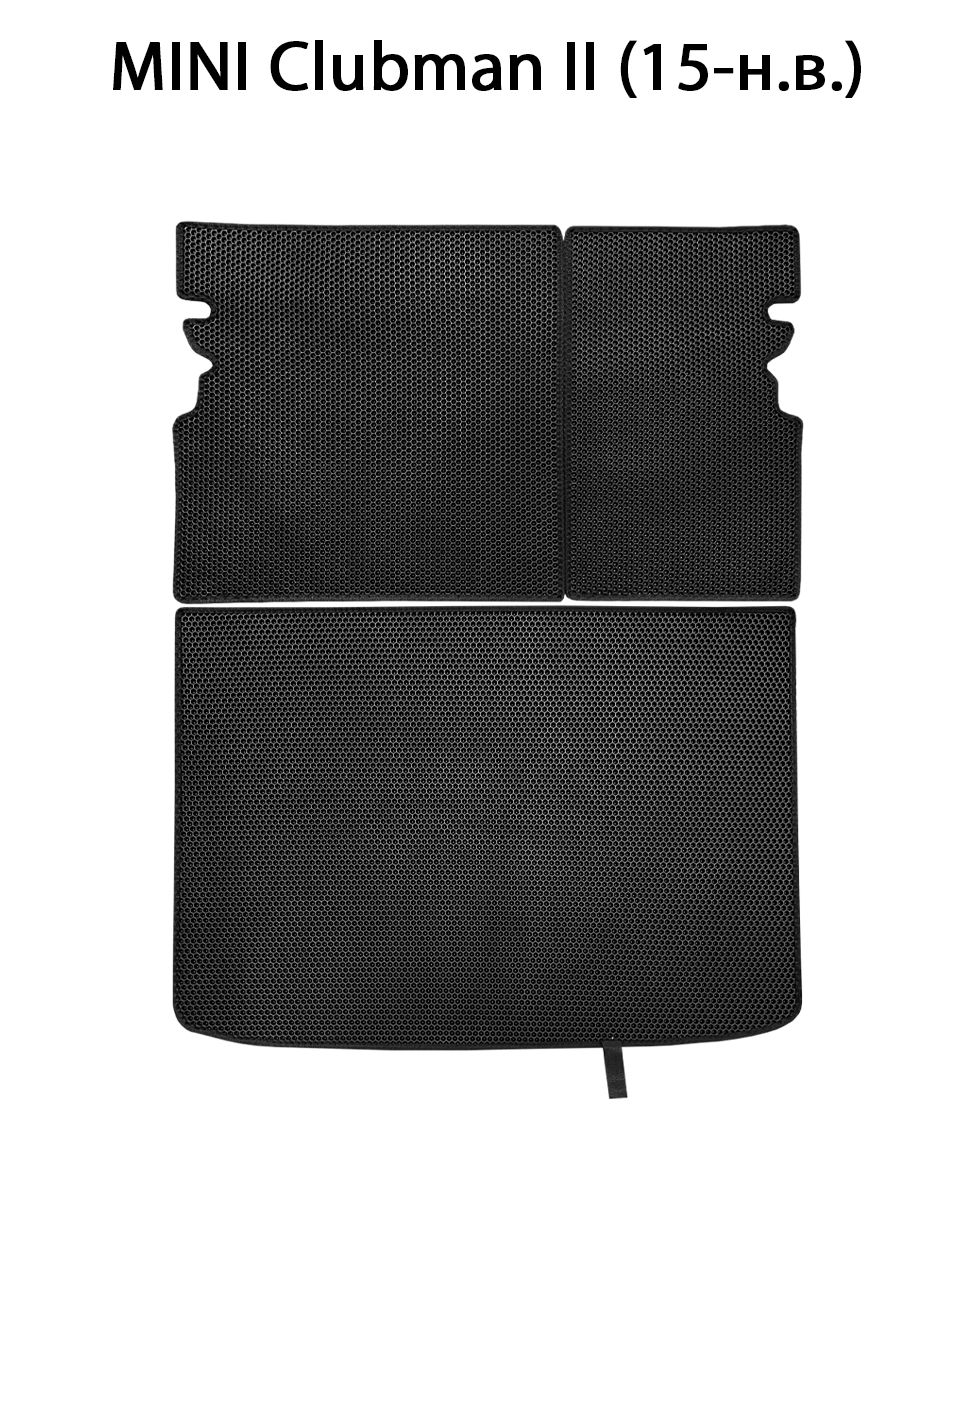 Коврик в багажник авто SUPERVIP для Mini Clubman II (15-н.в.) с накладками, черный